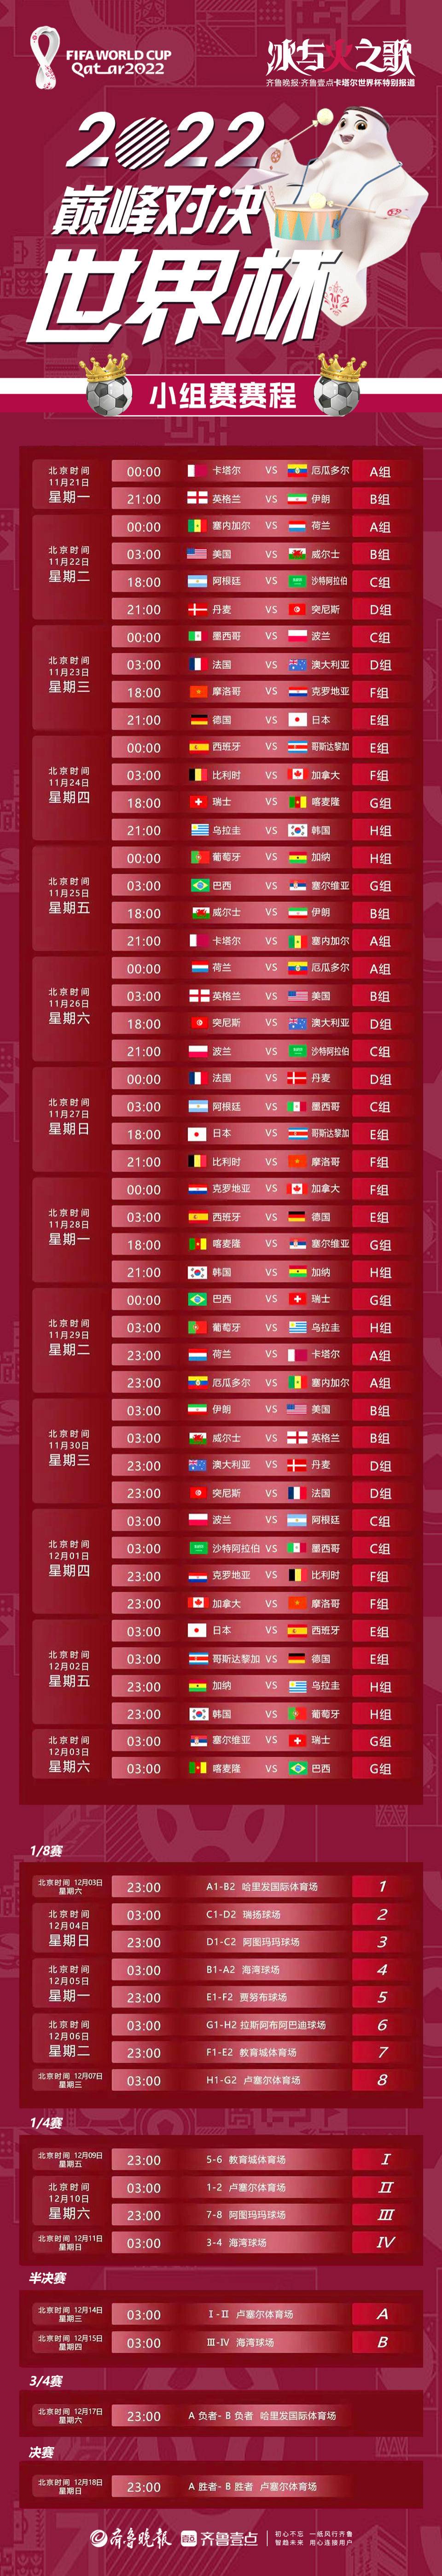 卡塔尔世界杯将拉开帷幕中国球迷观赛时间比较友好